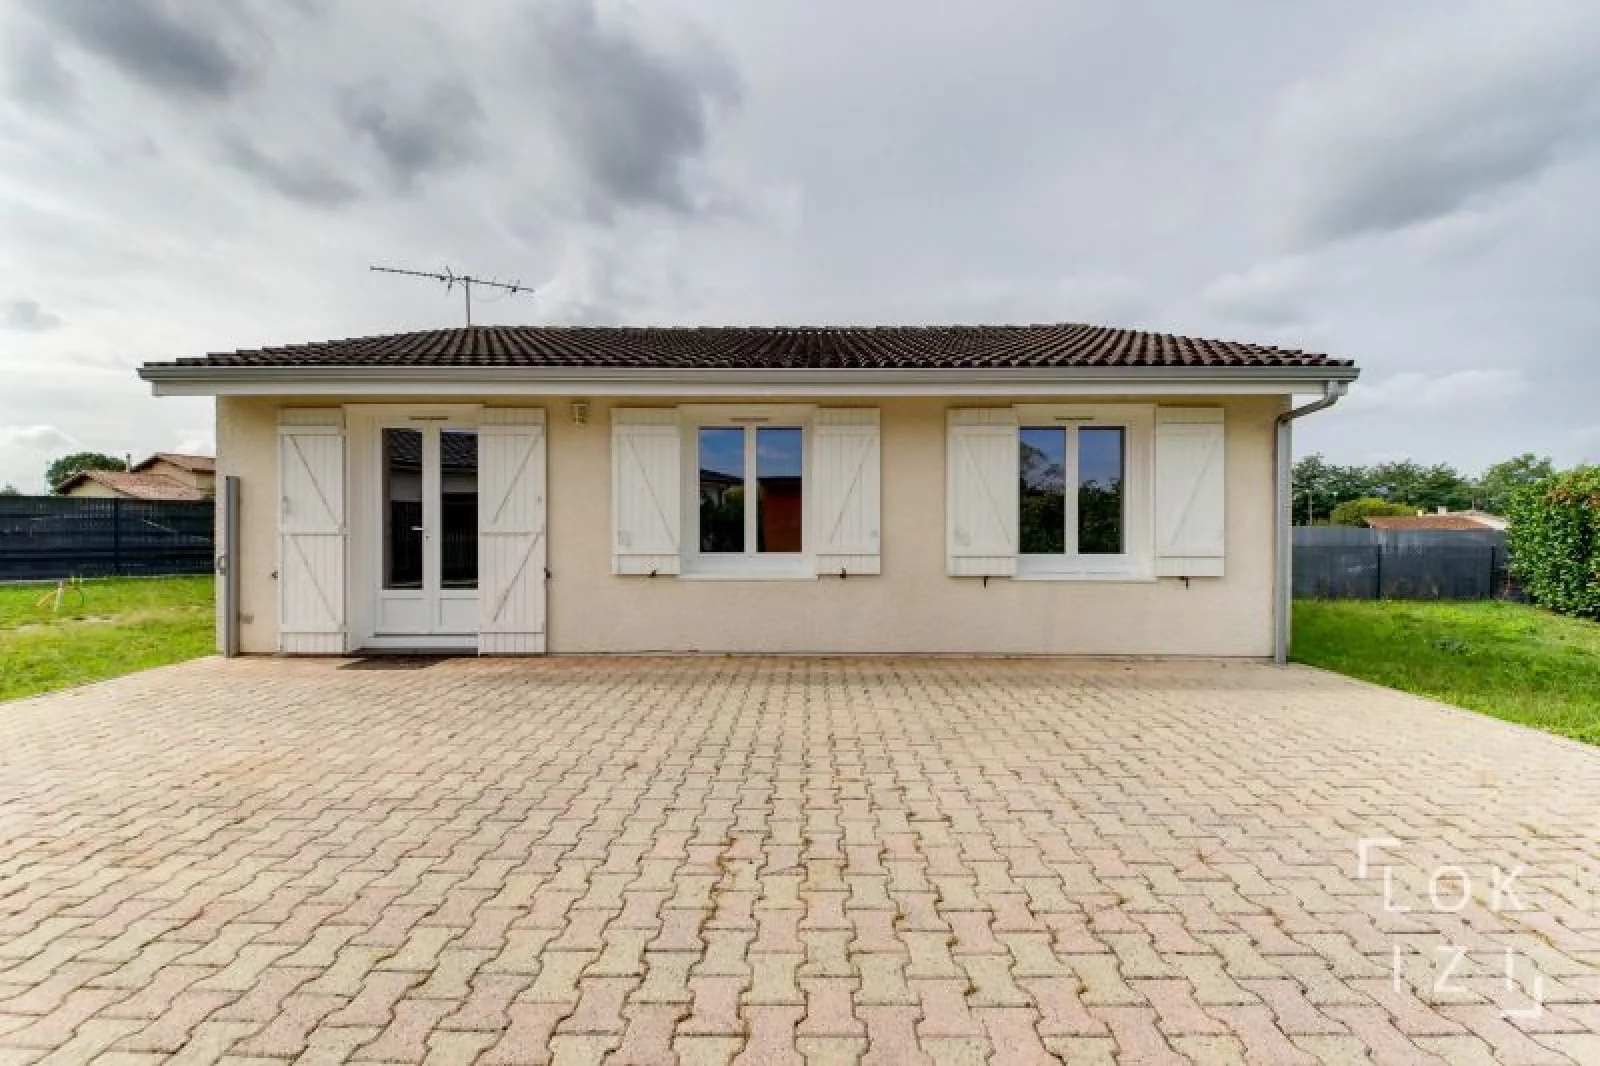 Location maison meublée 74m² avec jardin (Bordeaux - Ambarès et Lagrave)